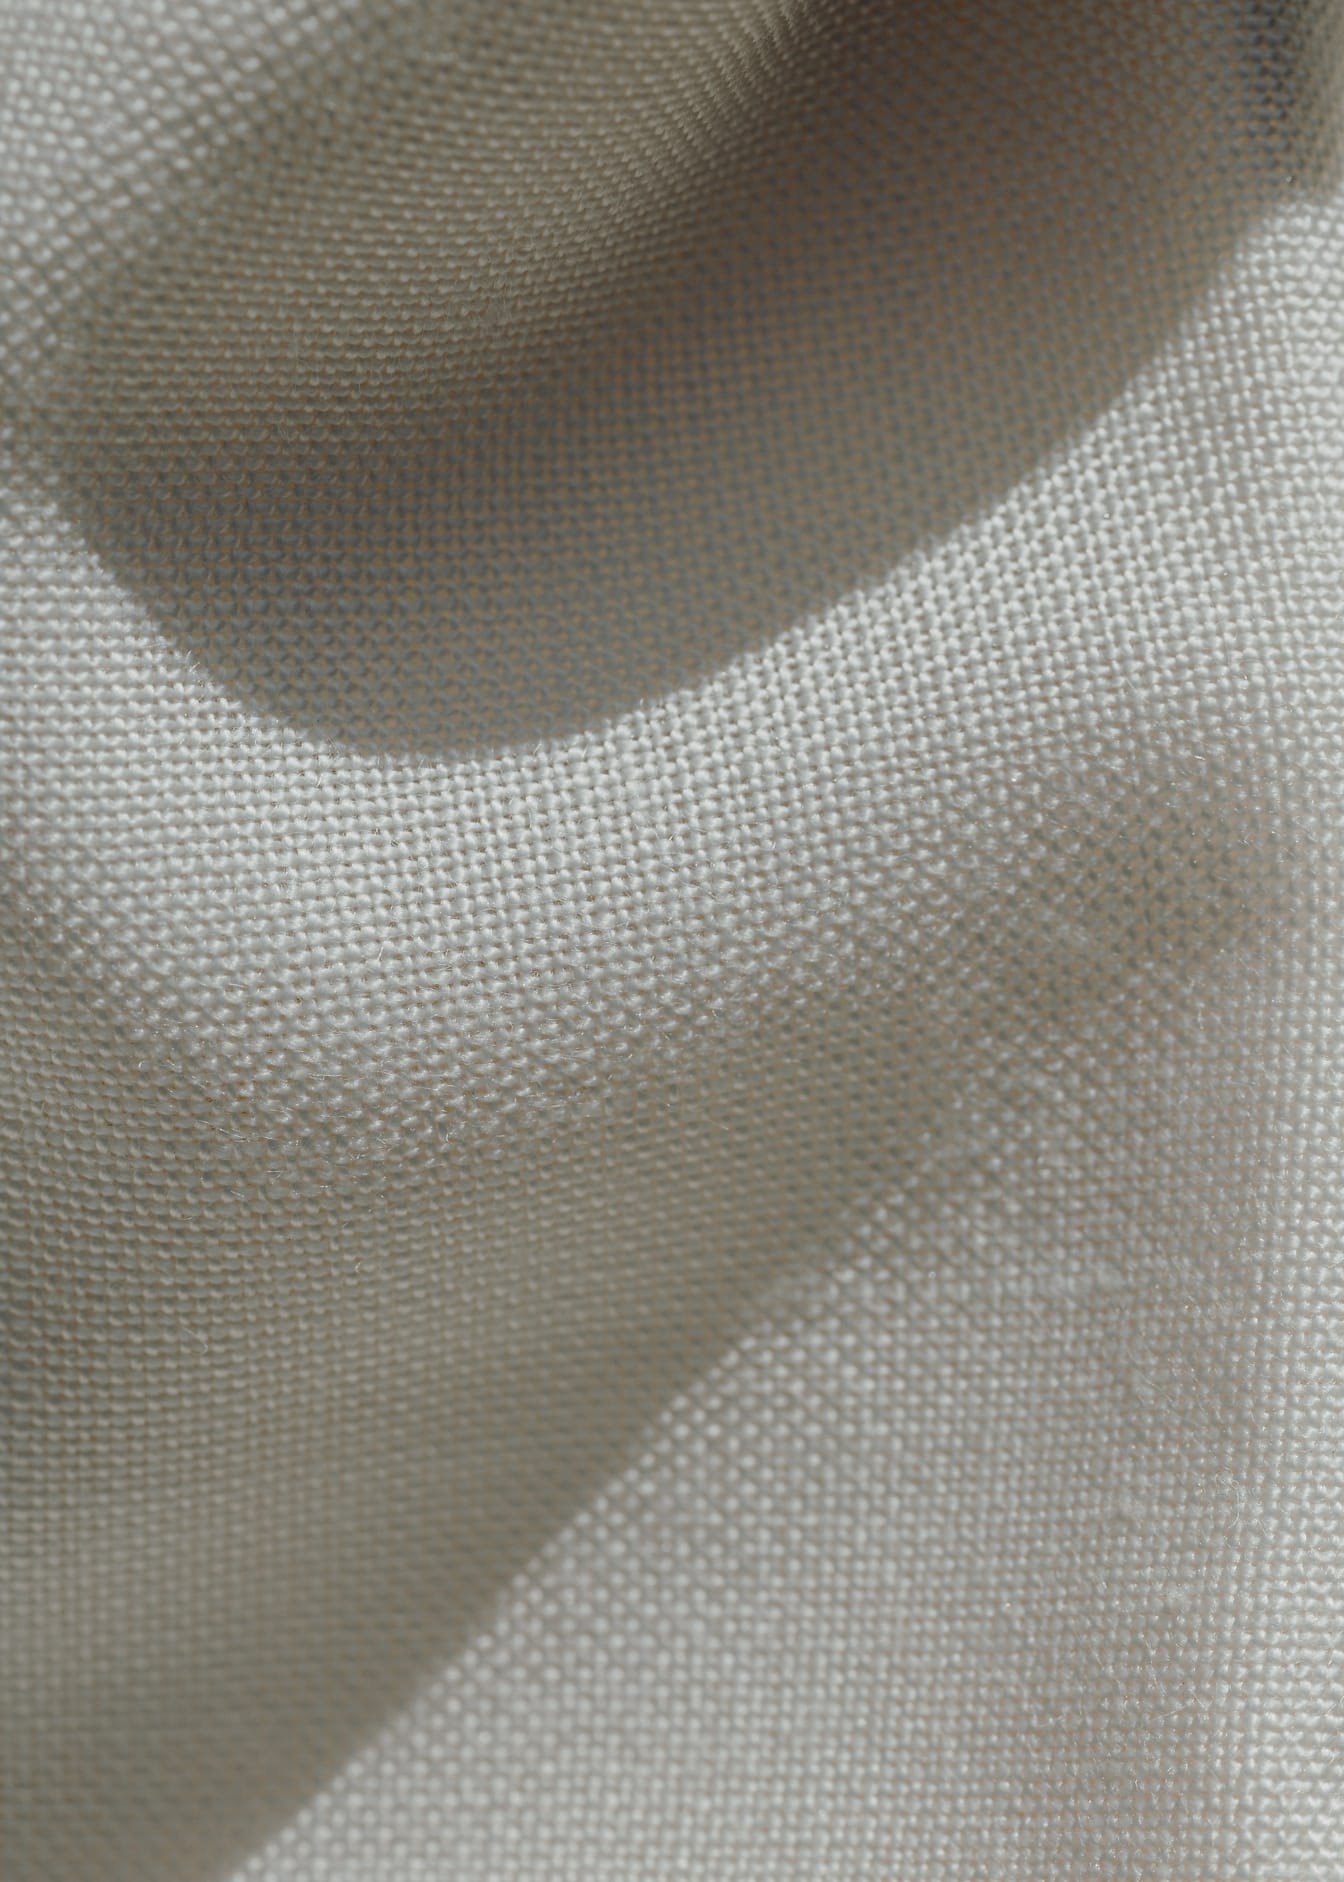 Primer plano de una tela de lino blanco arrugada con sombras